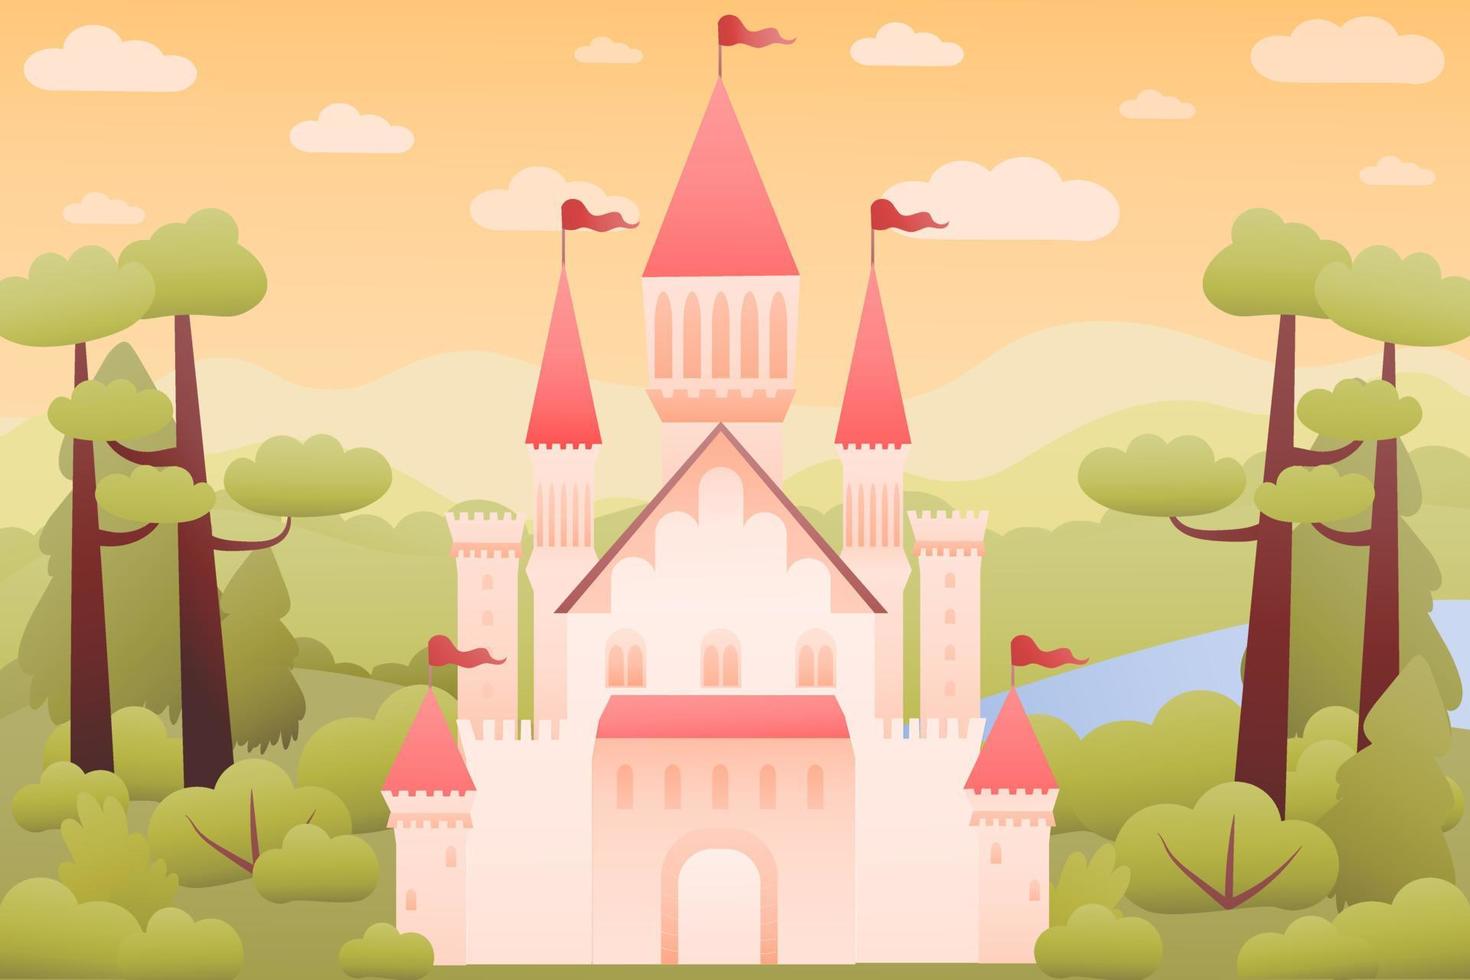 paisagem de conto de fadas com castelo rosa de fantasia medieval, colinas coloridas, céu mágico, ilustração para jogos ou livros infantis, mansão real onírica vetor